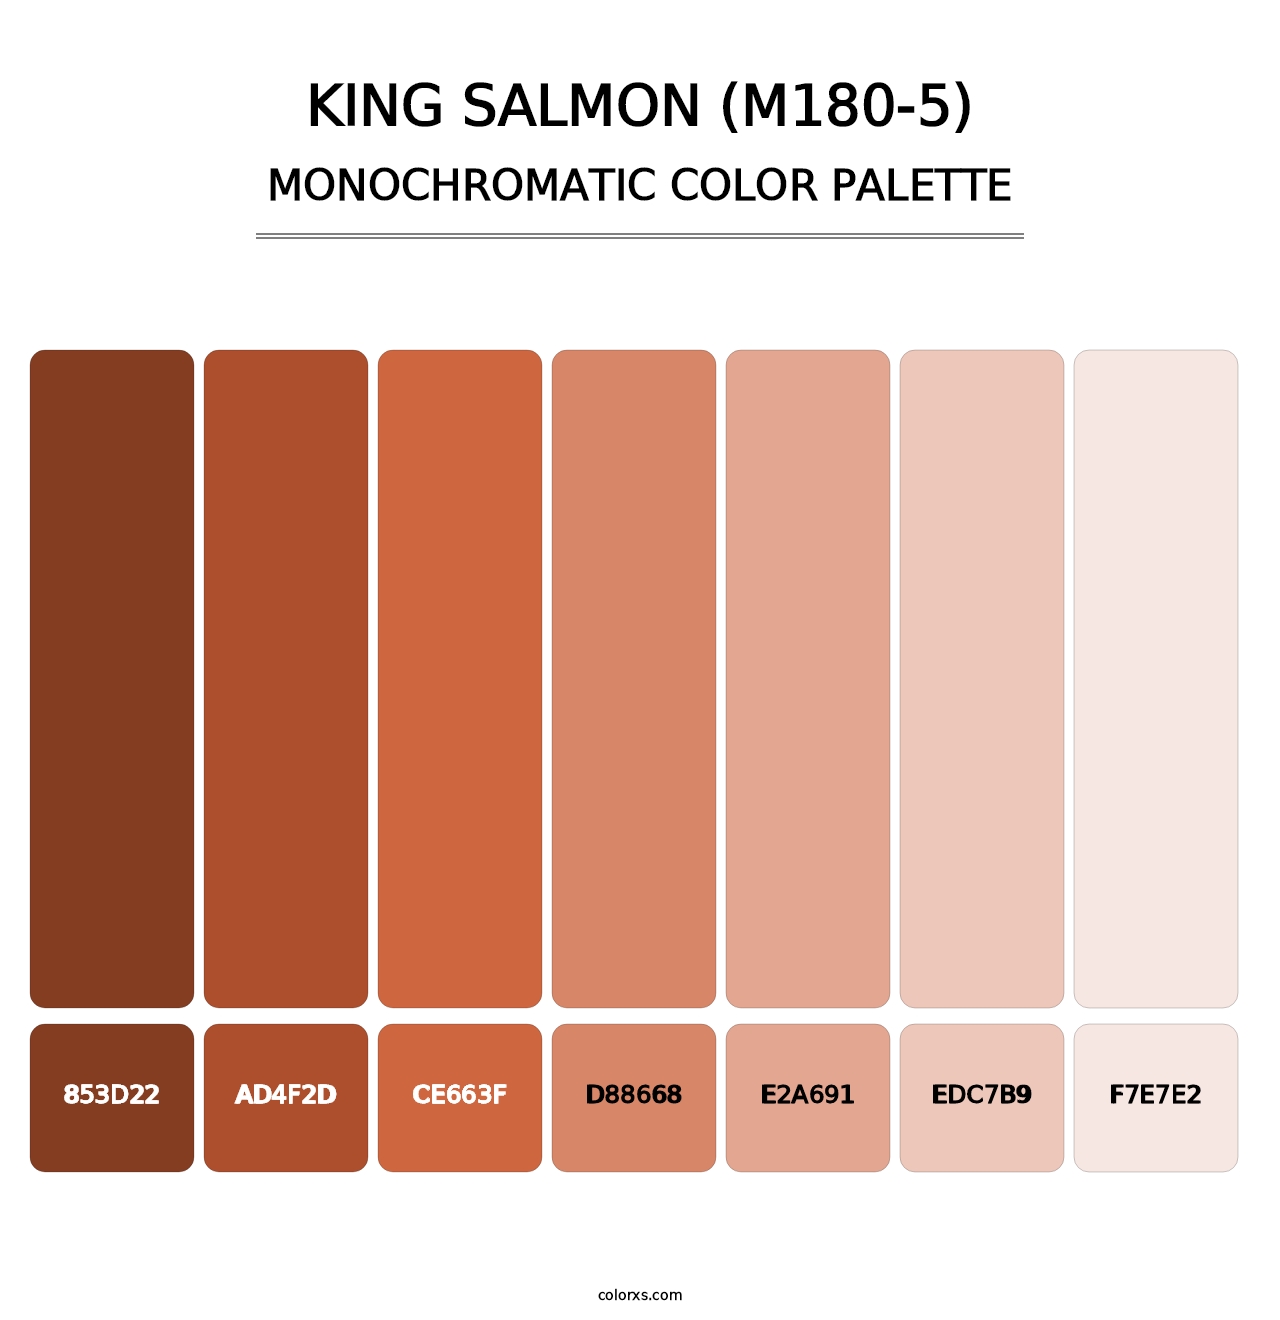 King Salmon (M180-5) - Monochromatic Color Palette